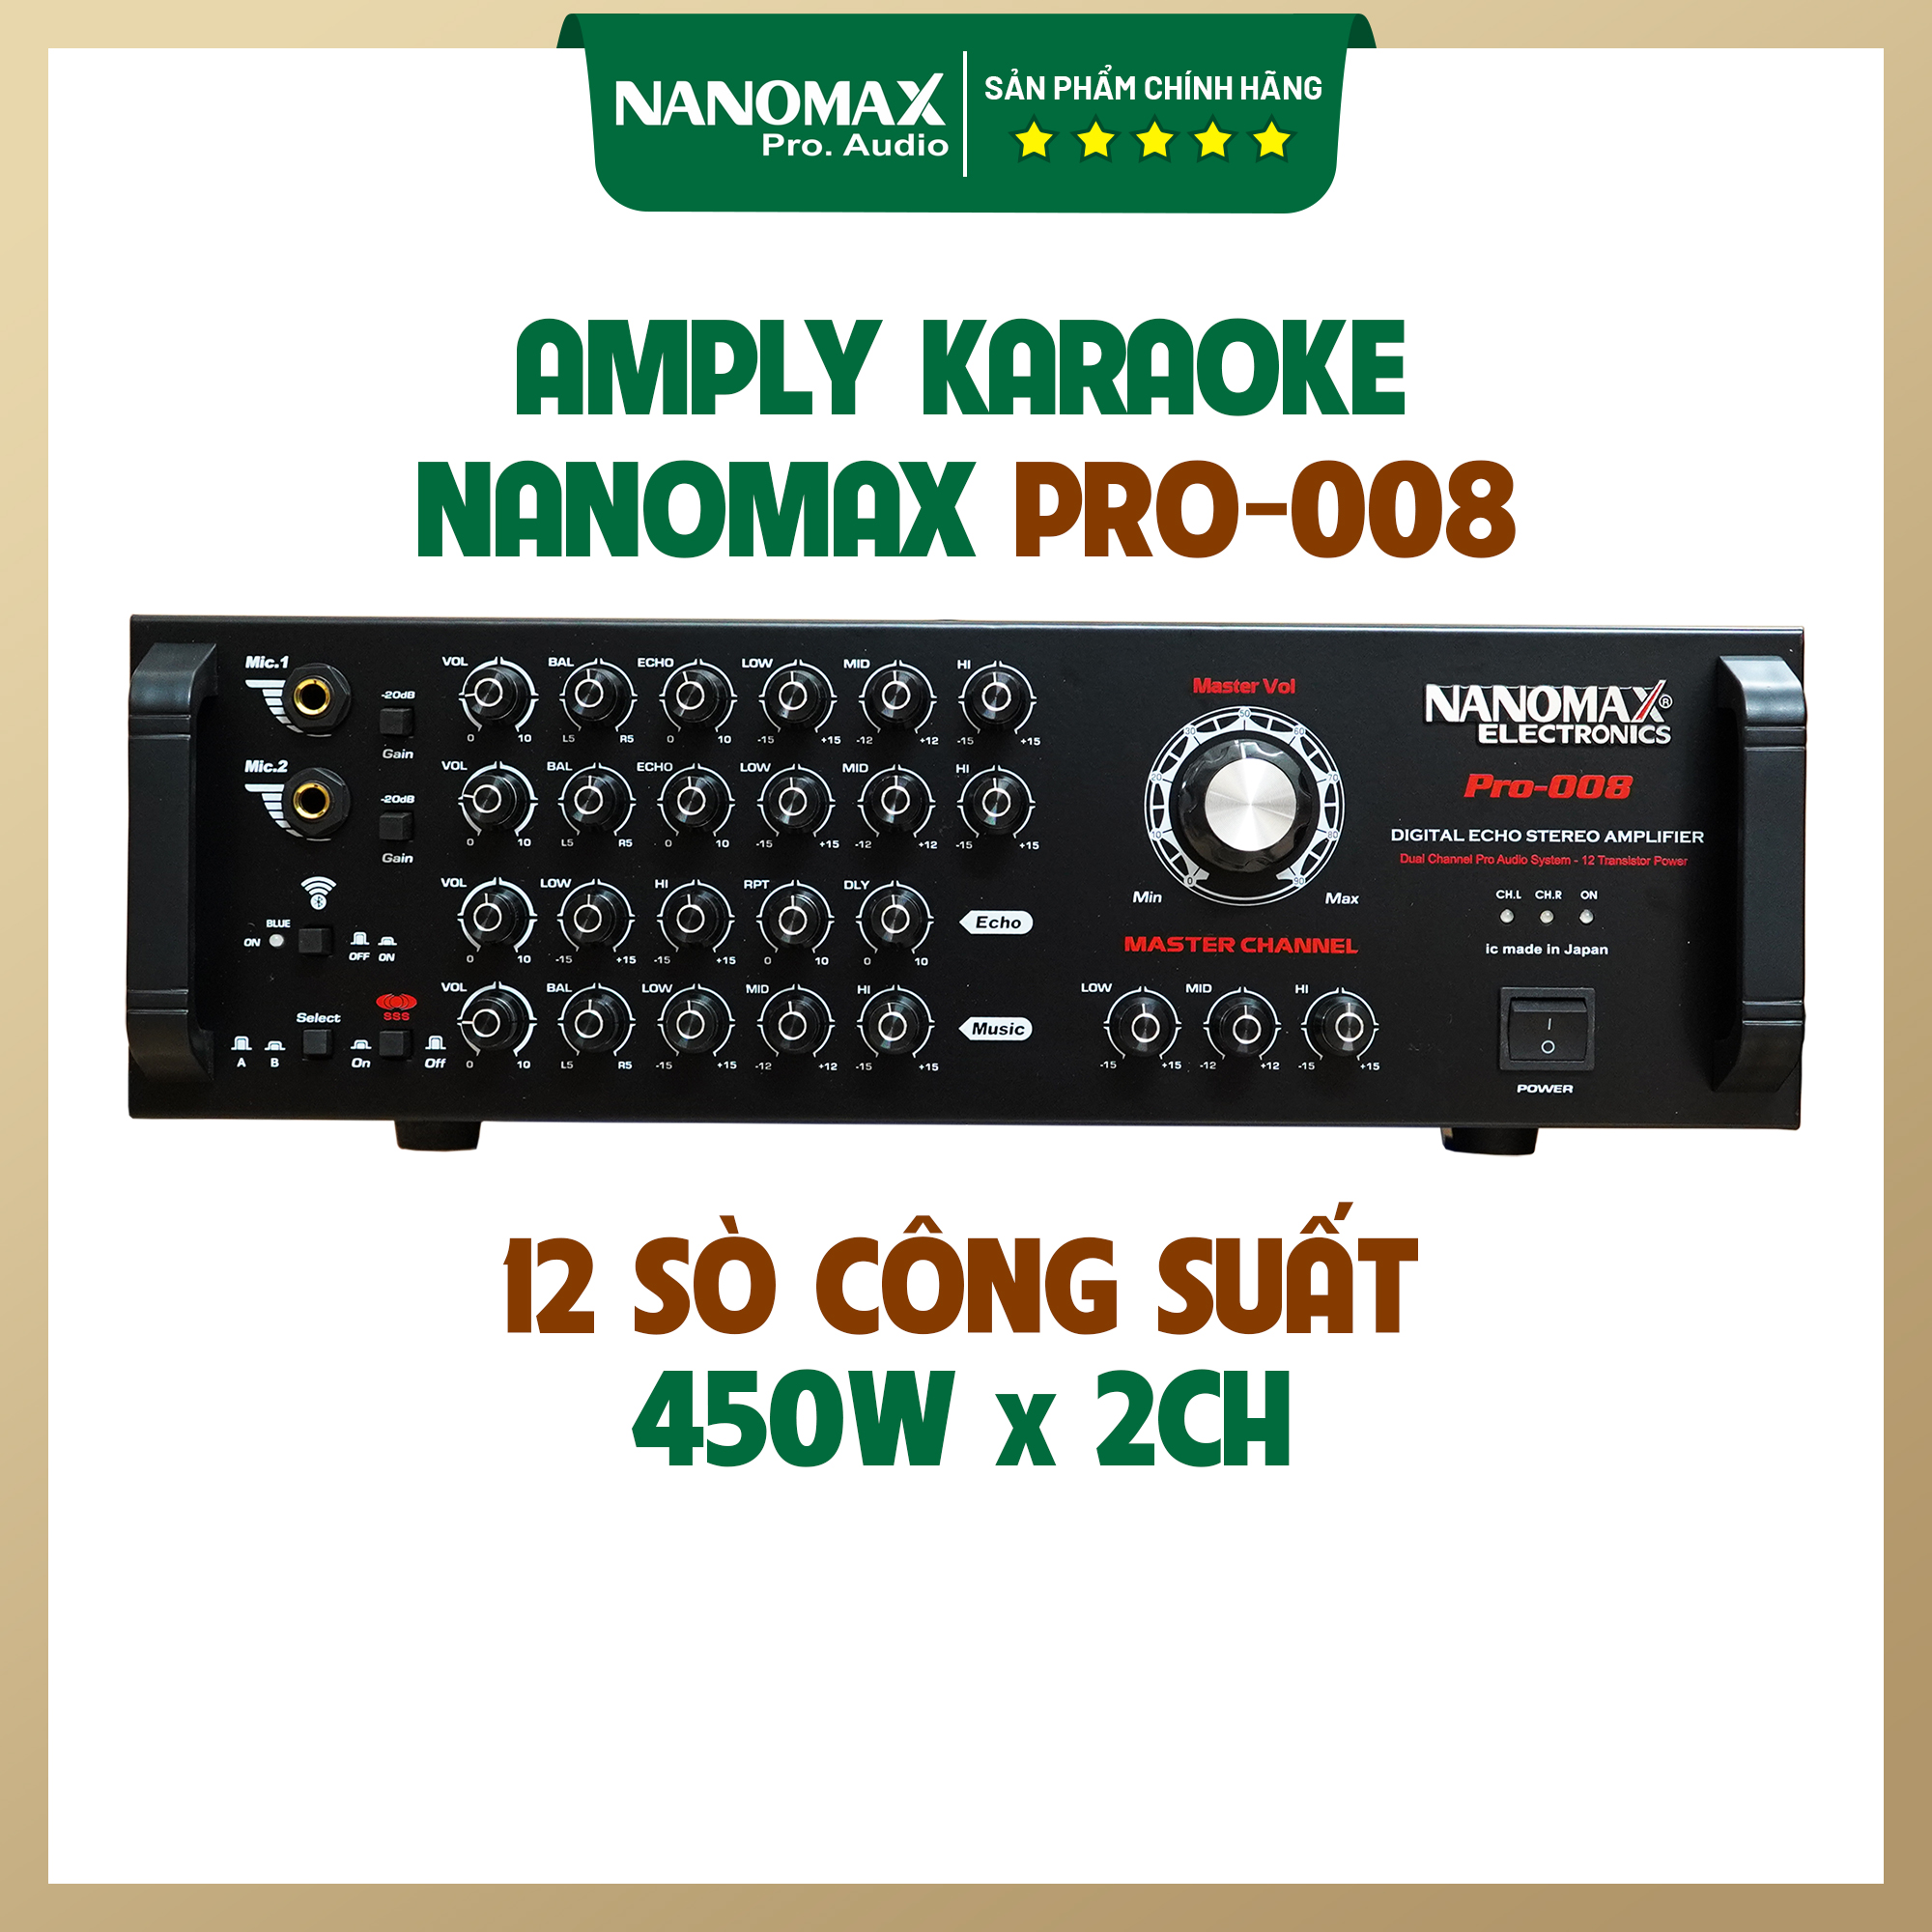 Amply Karaoke 12 Sò Nanomax Pro-008 Kết Nối Bluetooth Chính Hãng Chất Lượng Cao